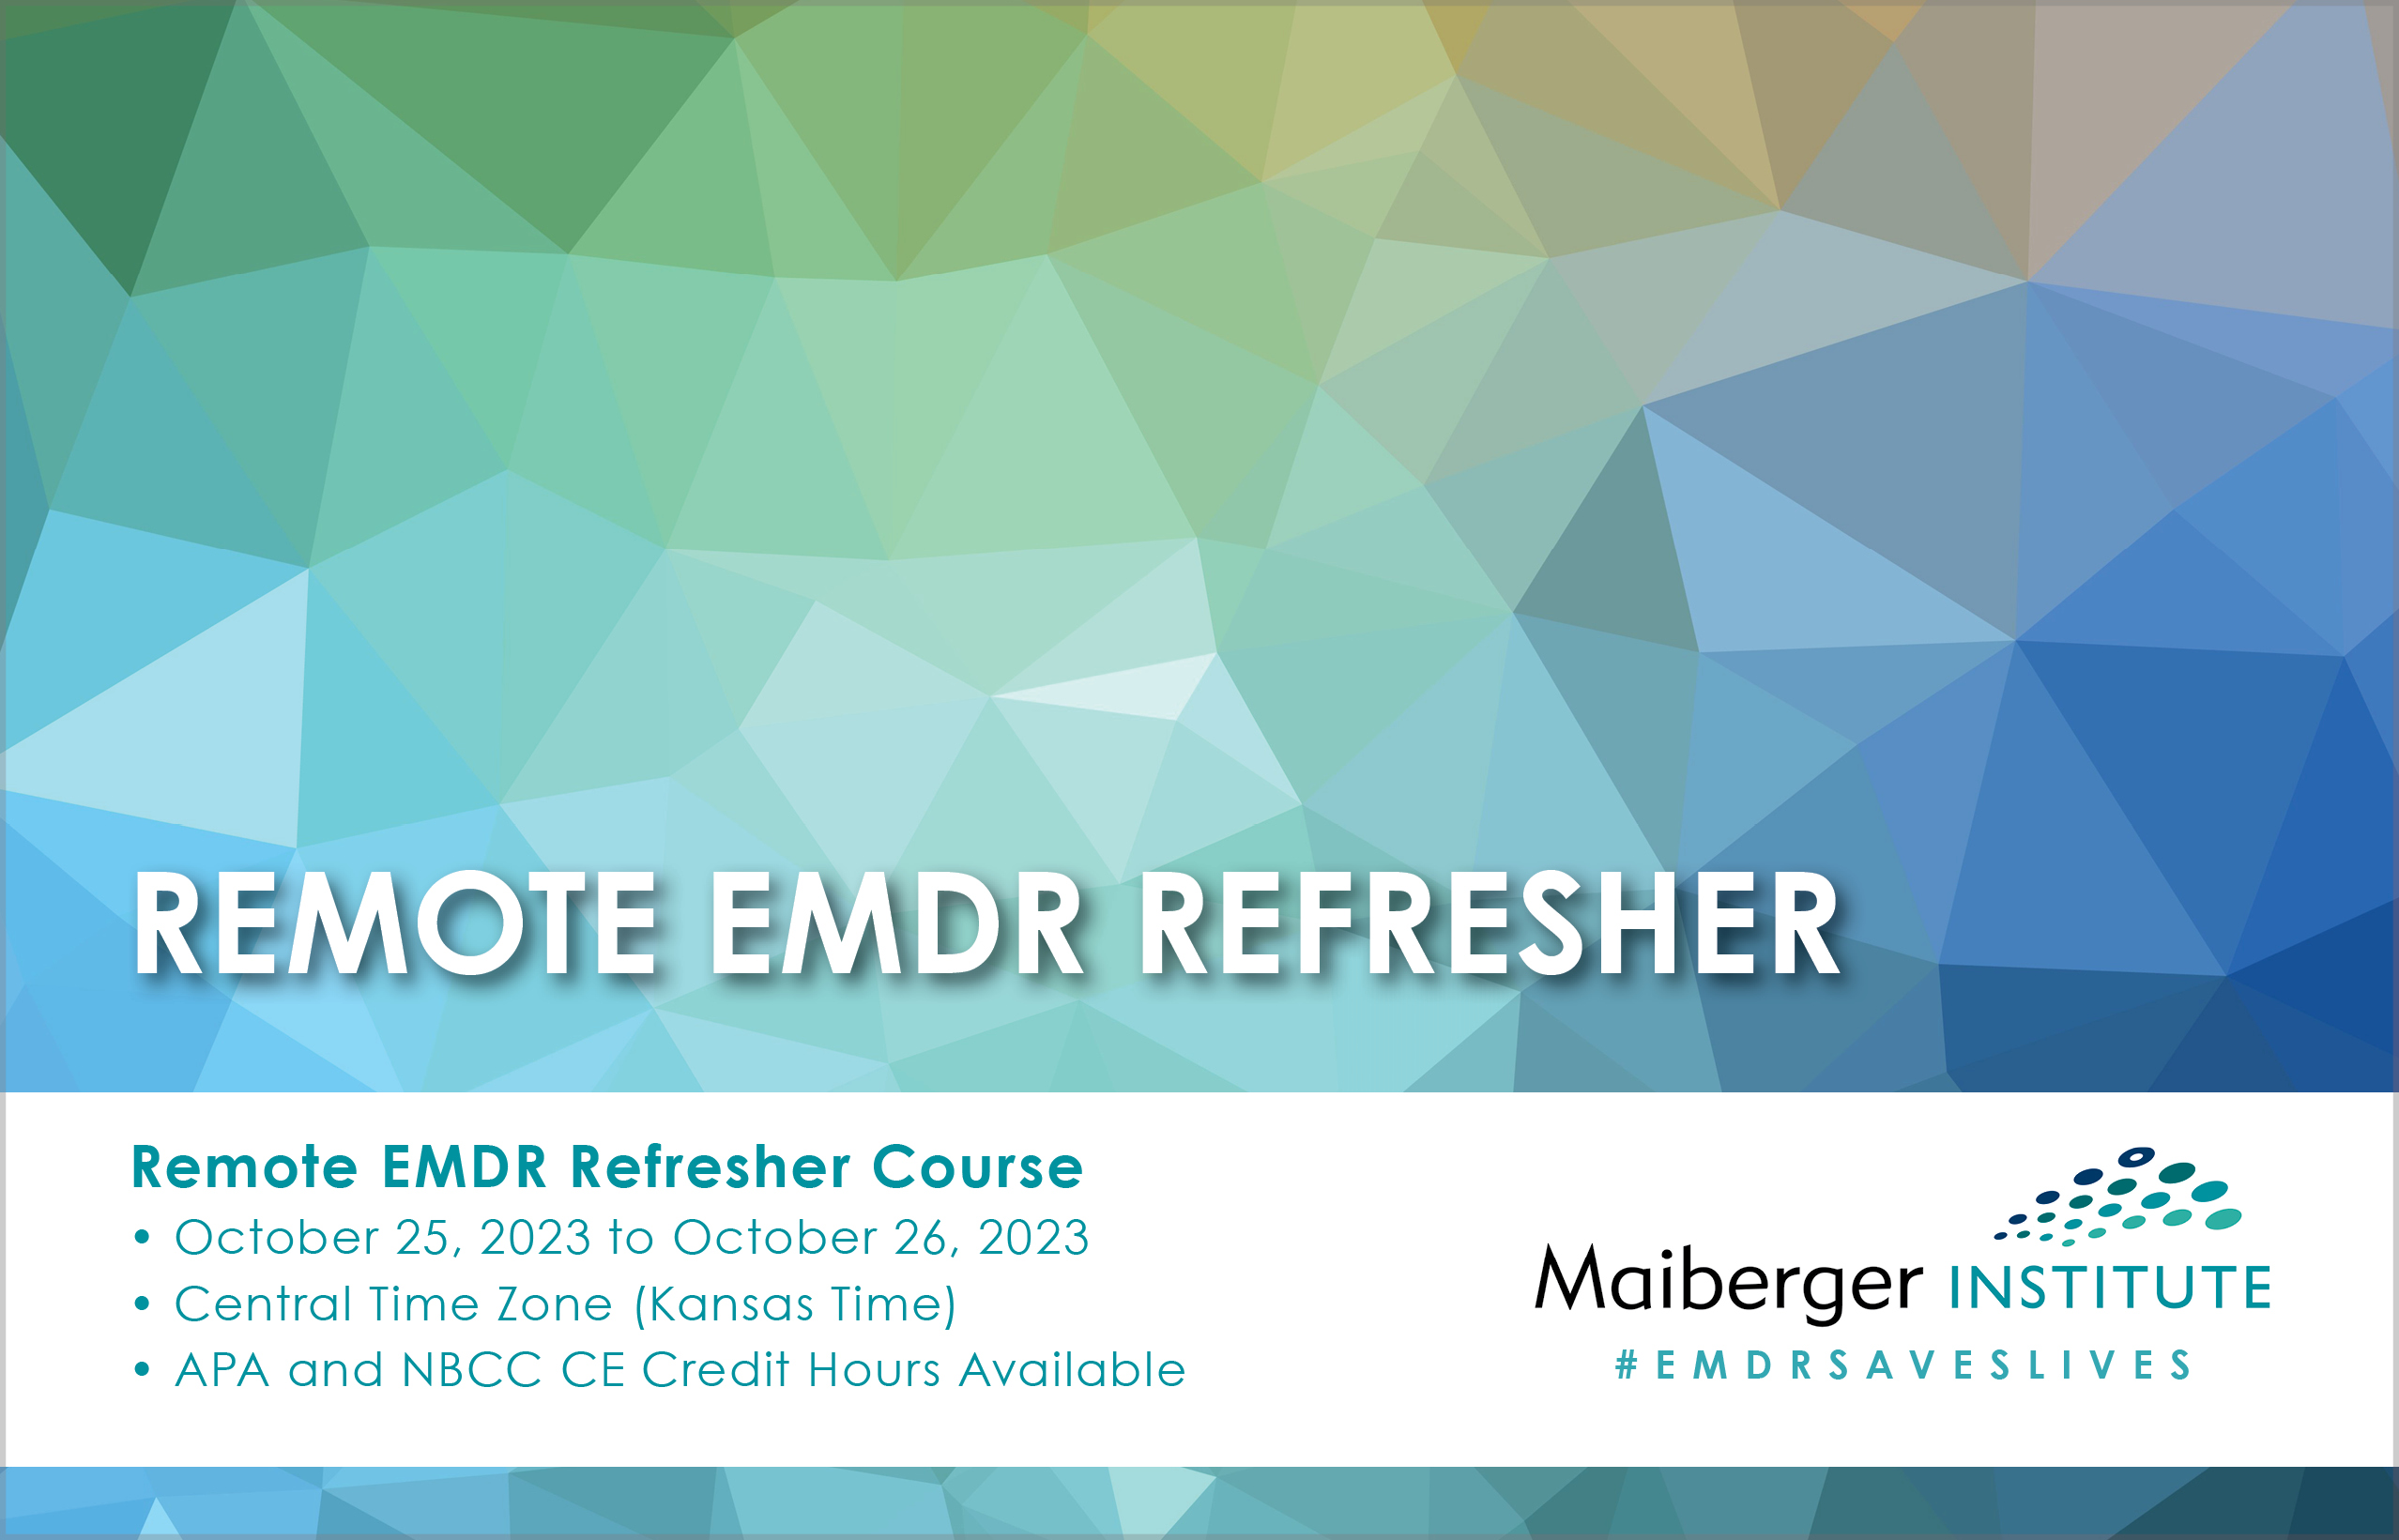 Remote EMDR Refresher Course - October 2023 - EMDR Events Calendar - Maiberger Institute